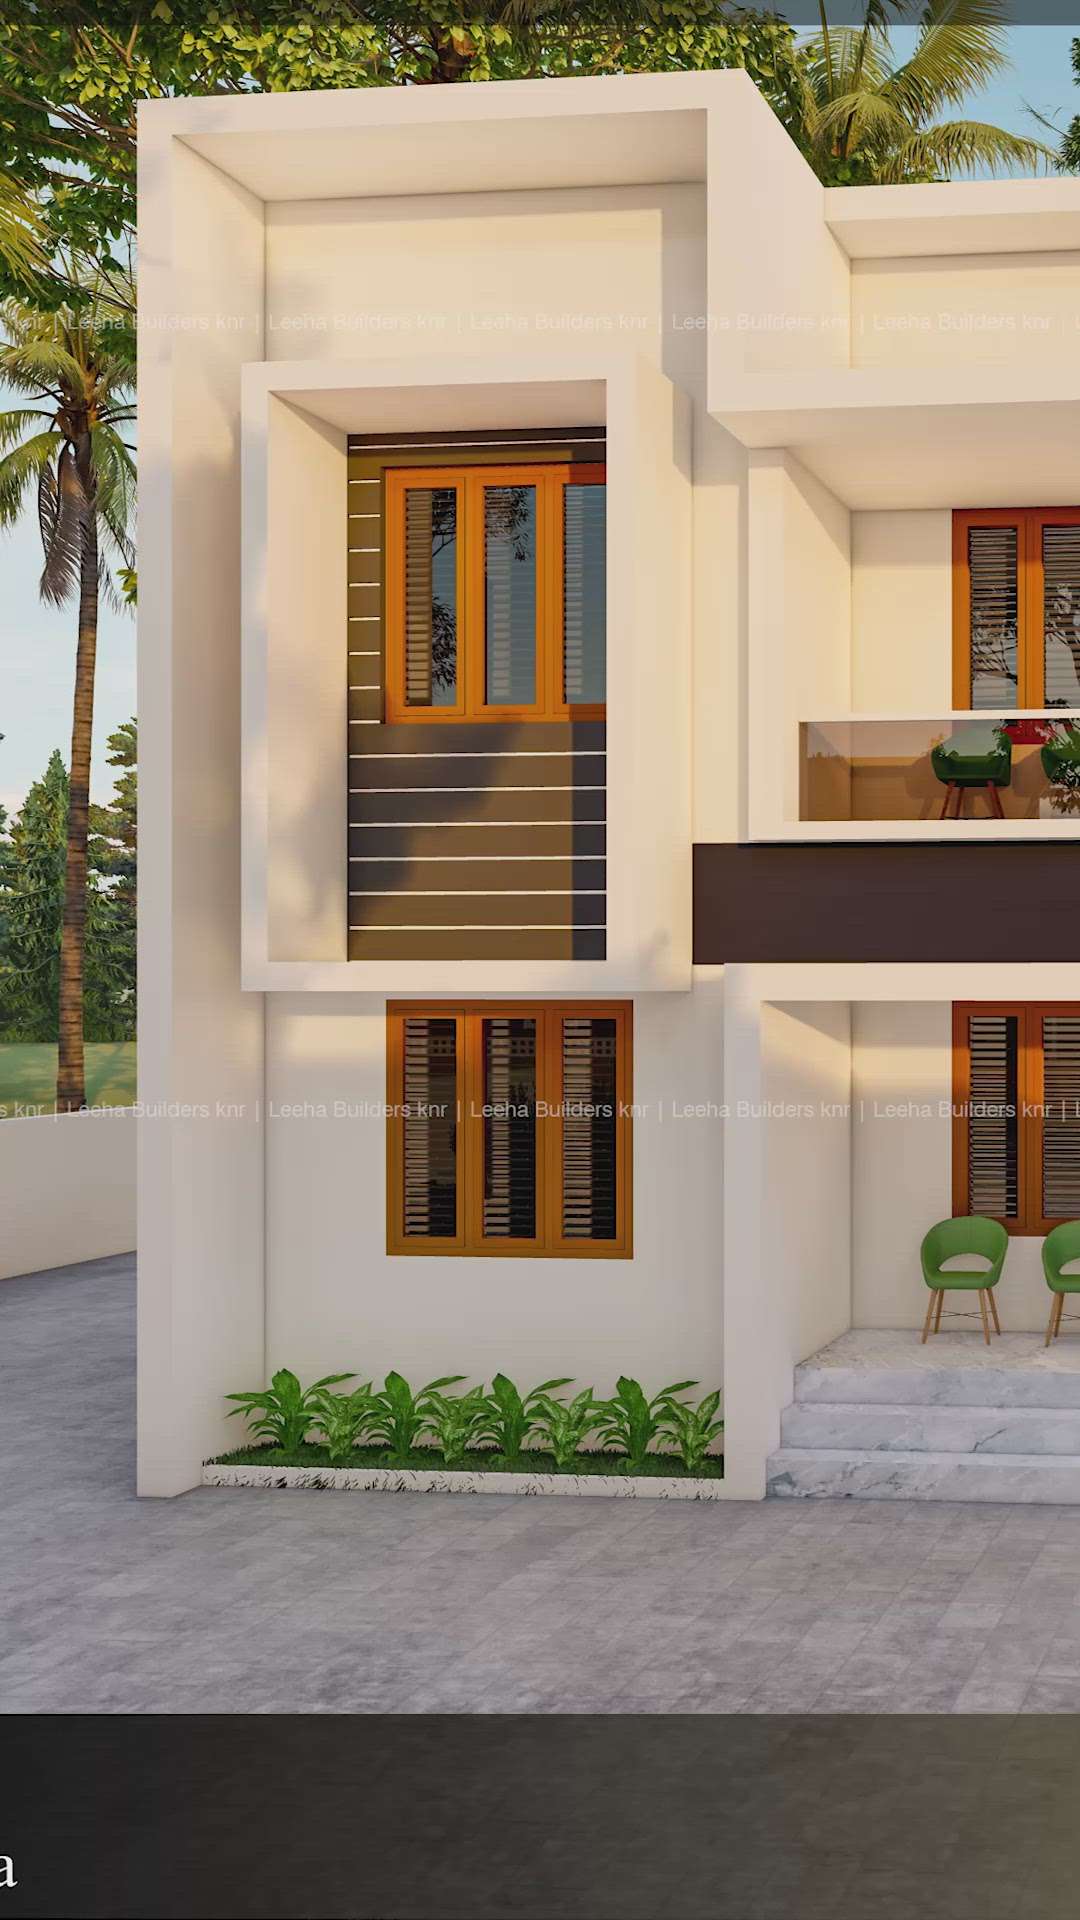 Leeha builders
kannur & kochi
7306950091 
#HouseDesigns  
#modernhome